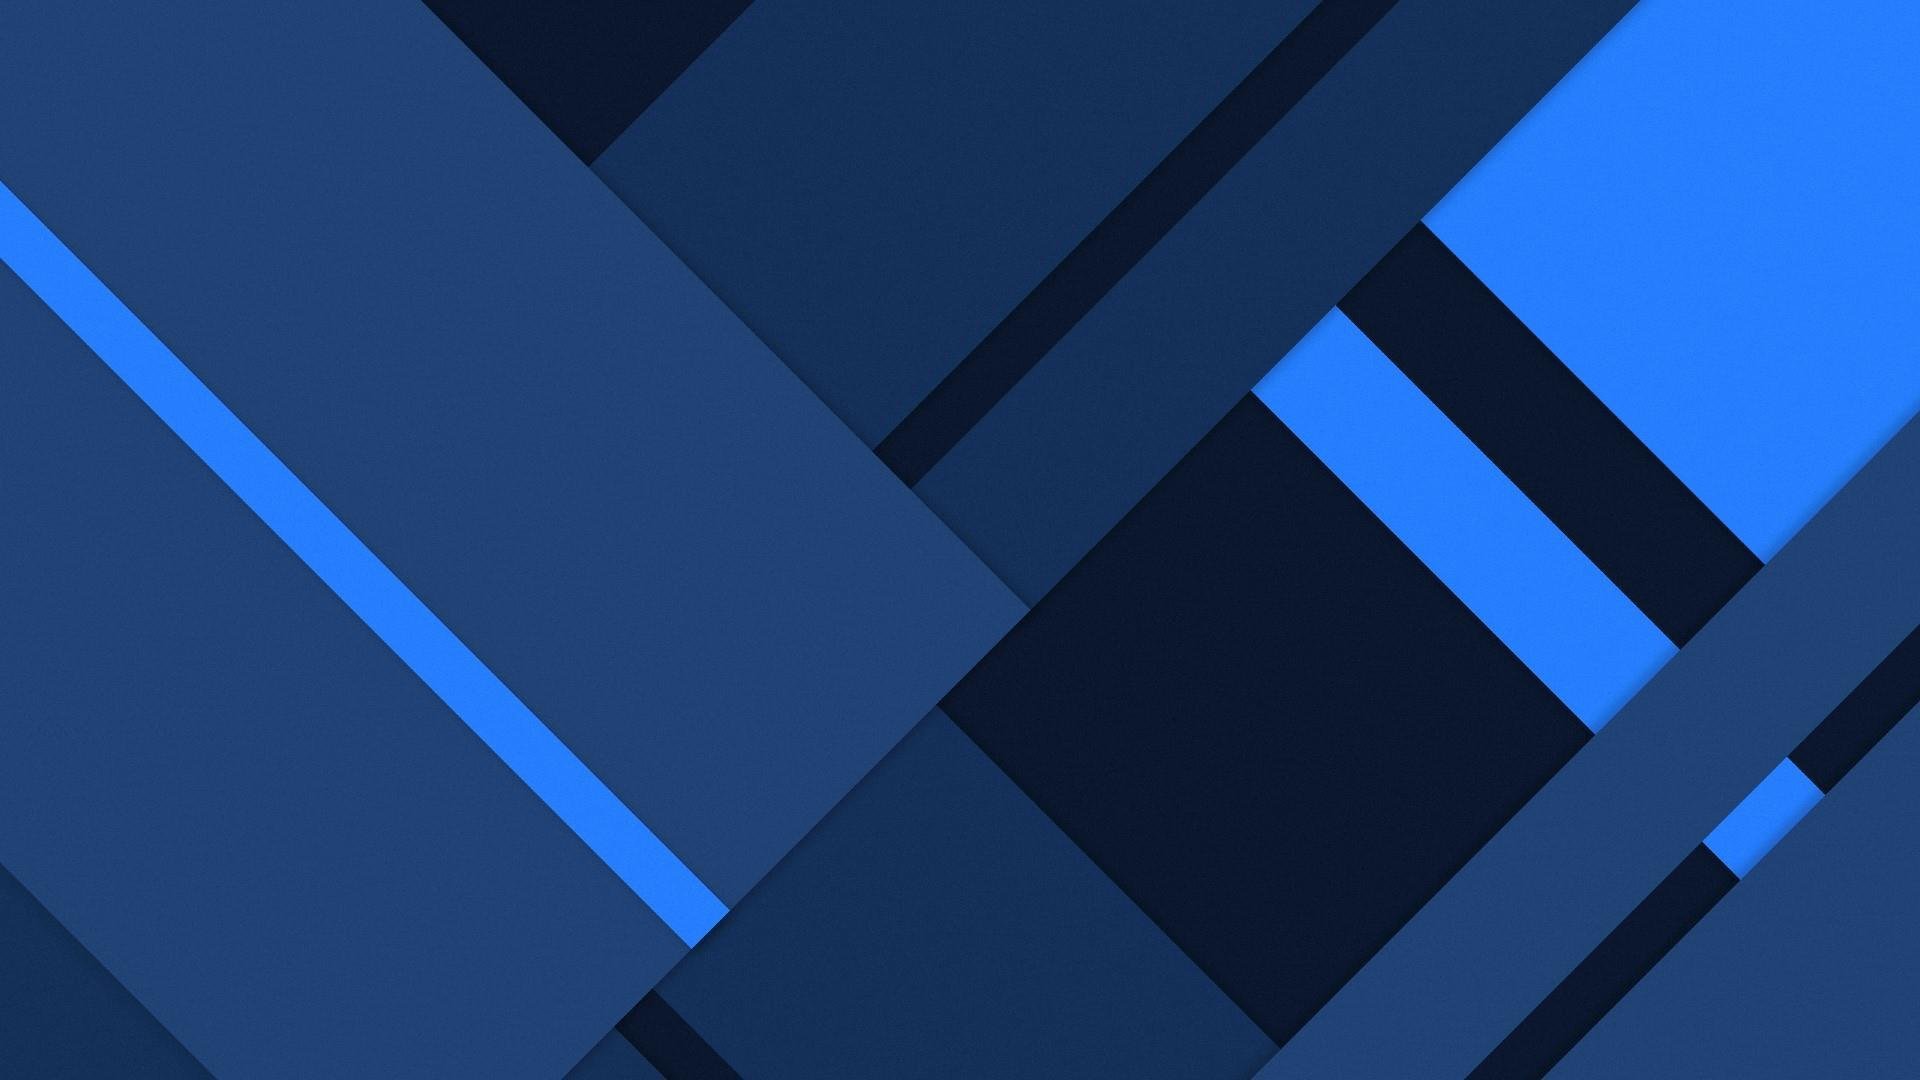 Flat blue. Синие обои. Синий Минимализм. Абстракция прямоугольники. Синий фон с полосками.